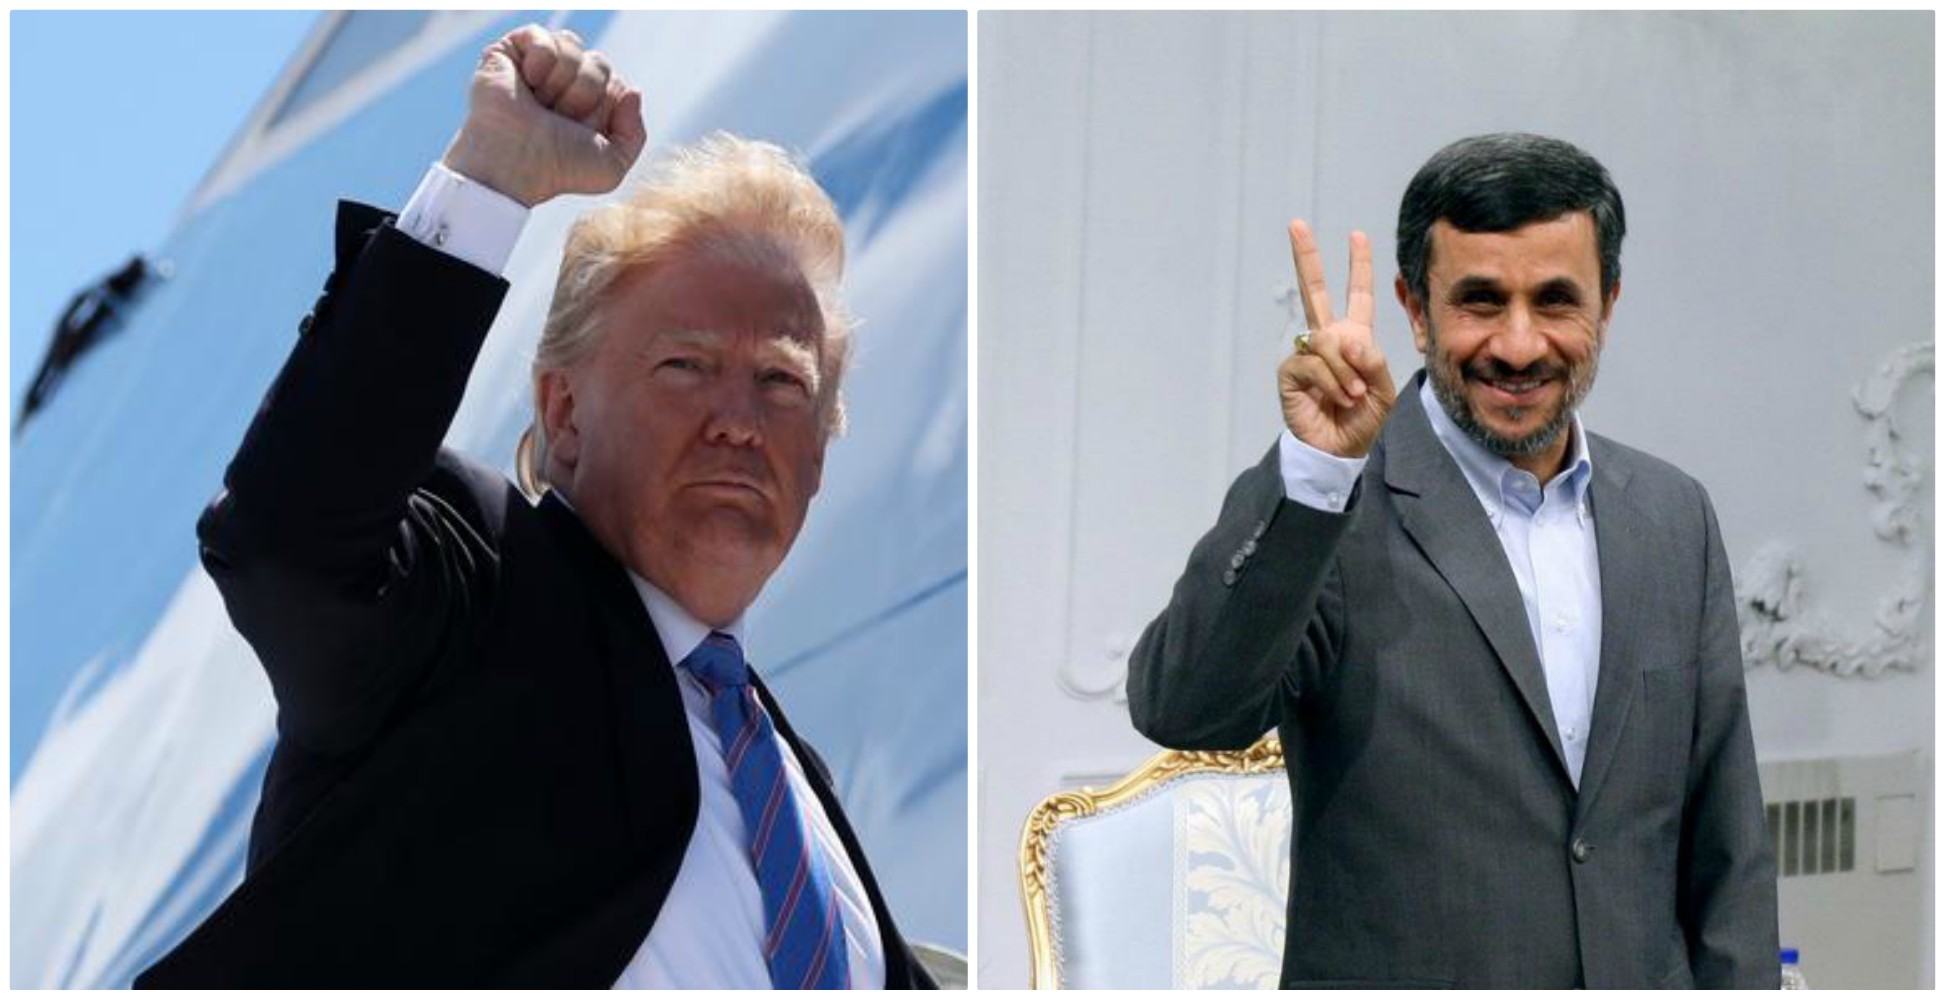 احمدی نژاد و ترامپ؛ دو رییس جمهوری که جدی گرفته نشدند